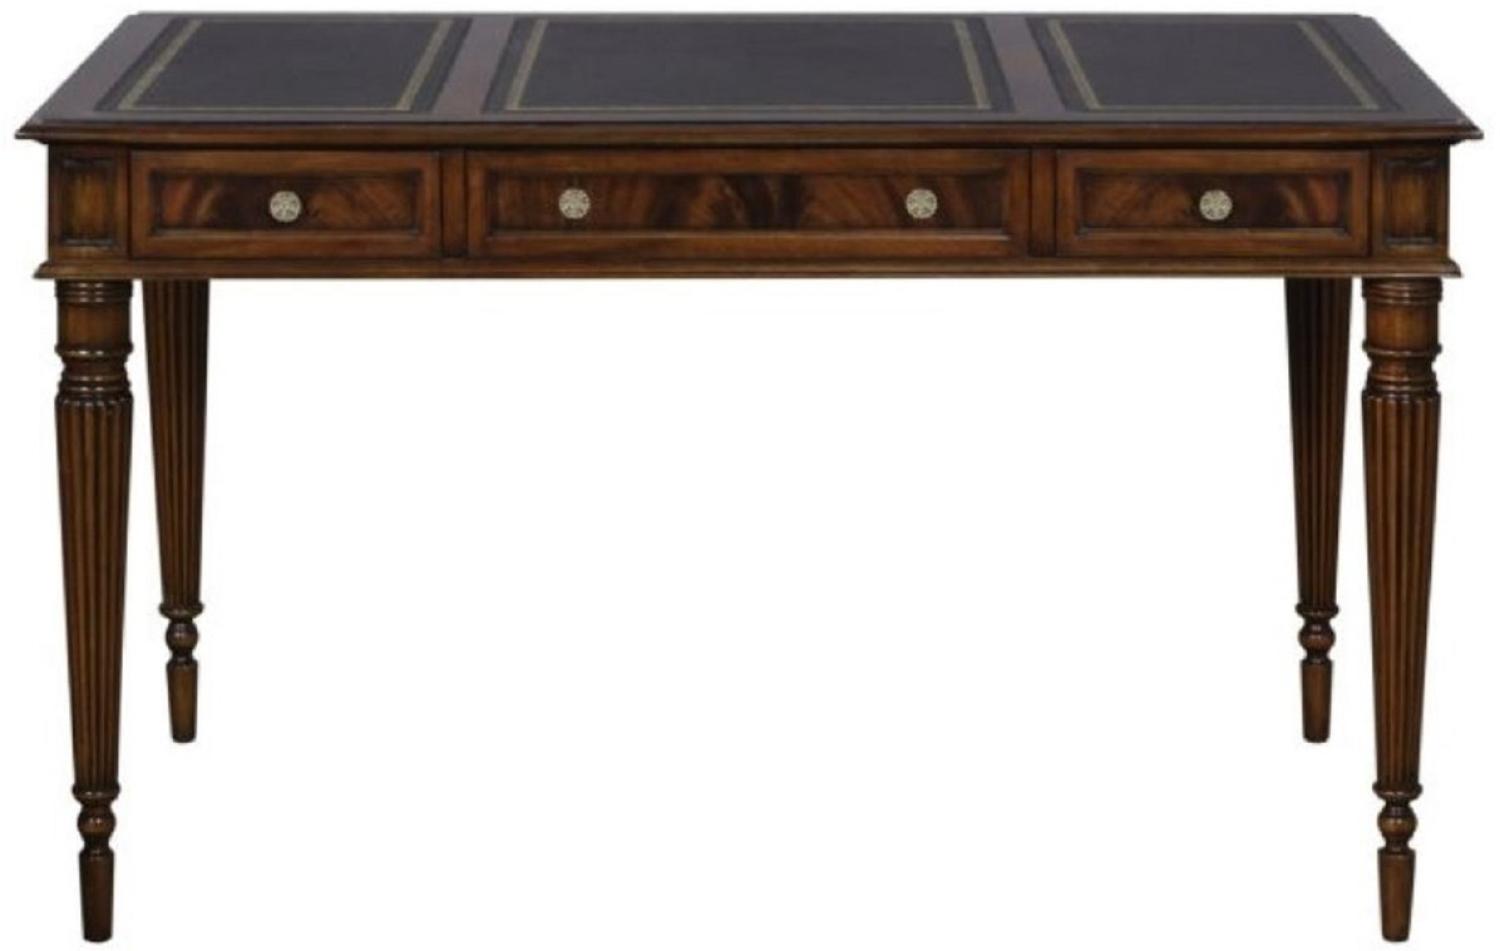 Casa Padrino Luxus Jugendstil Mahagoni Schreibtisch mit 3 Schubladen Dunkelbraun / Schwarz / Gold 126 x 73 x H. 75 cm - Büromöbel - Luxus Qualität Bild 1